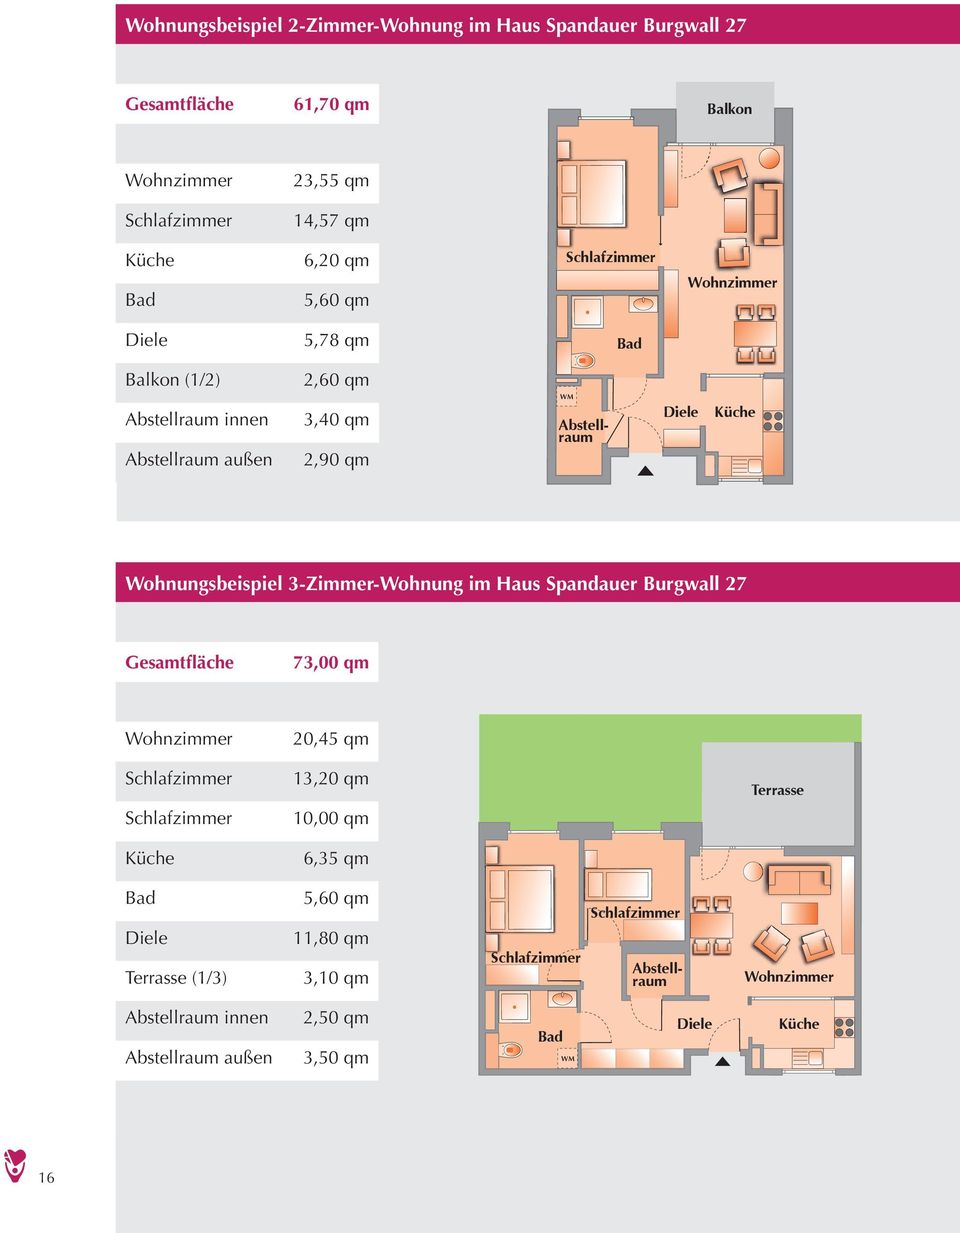 Wohnungsbeispiel 3-Zimmer-Wohnung im Haus Spandauer Burgwall 27 Gesamtfläche 73,00 qm 20,45 qm 13,20 qm Terrasse